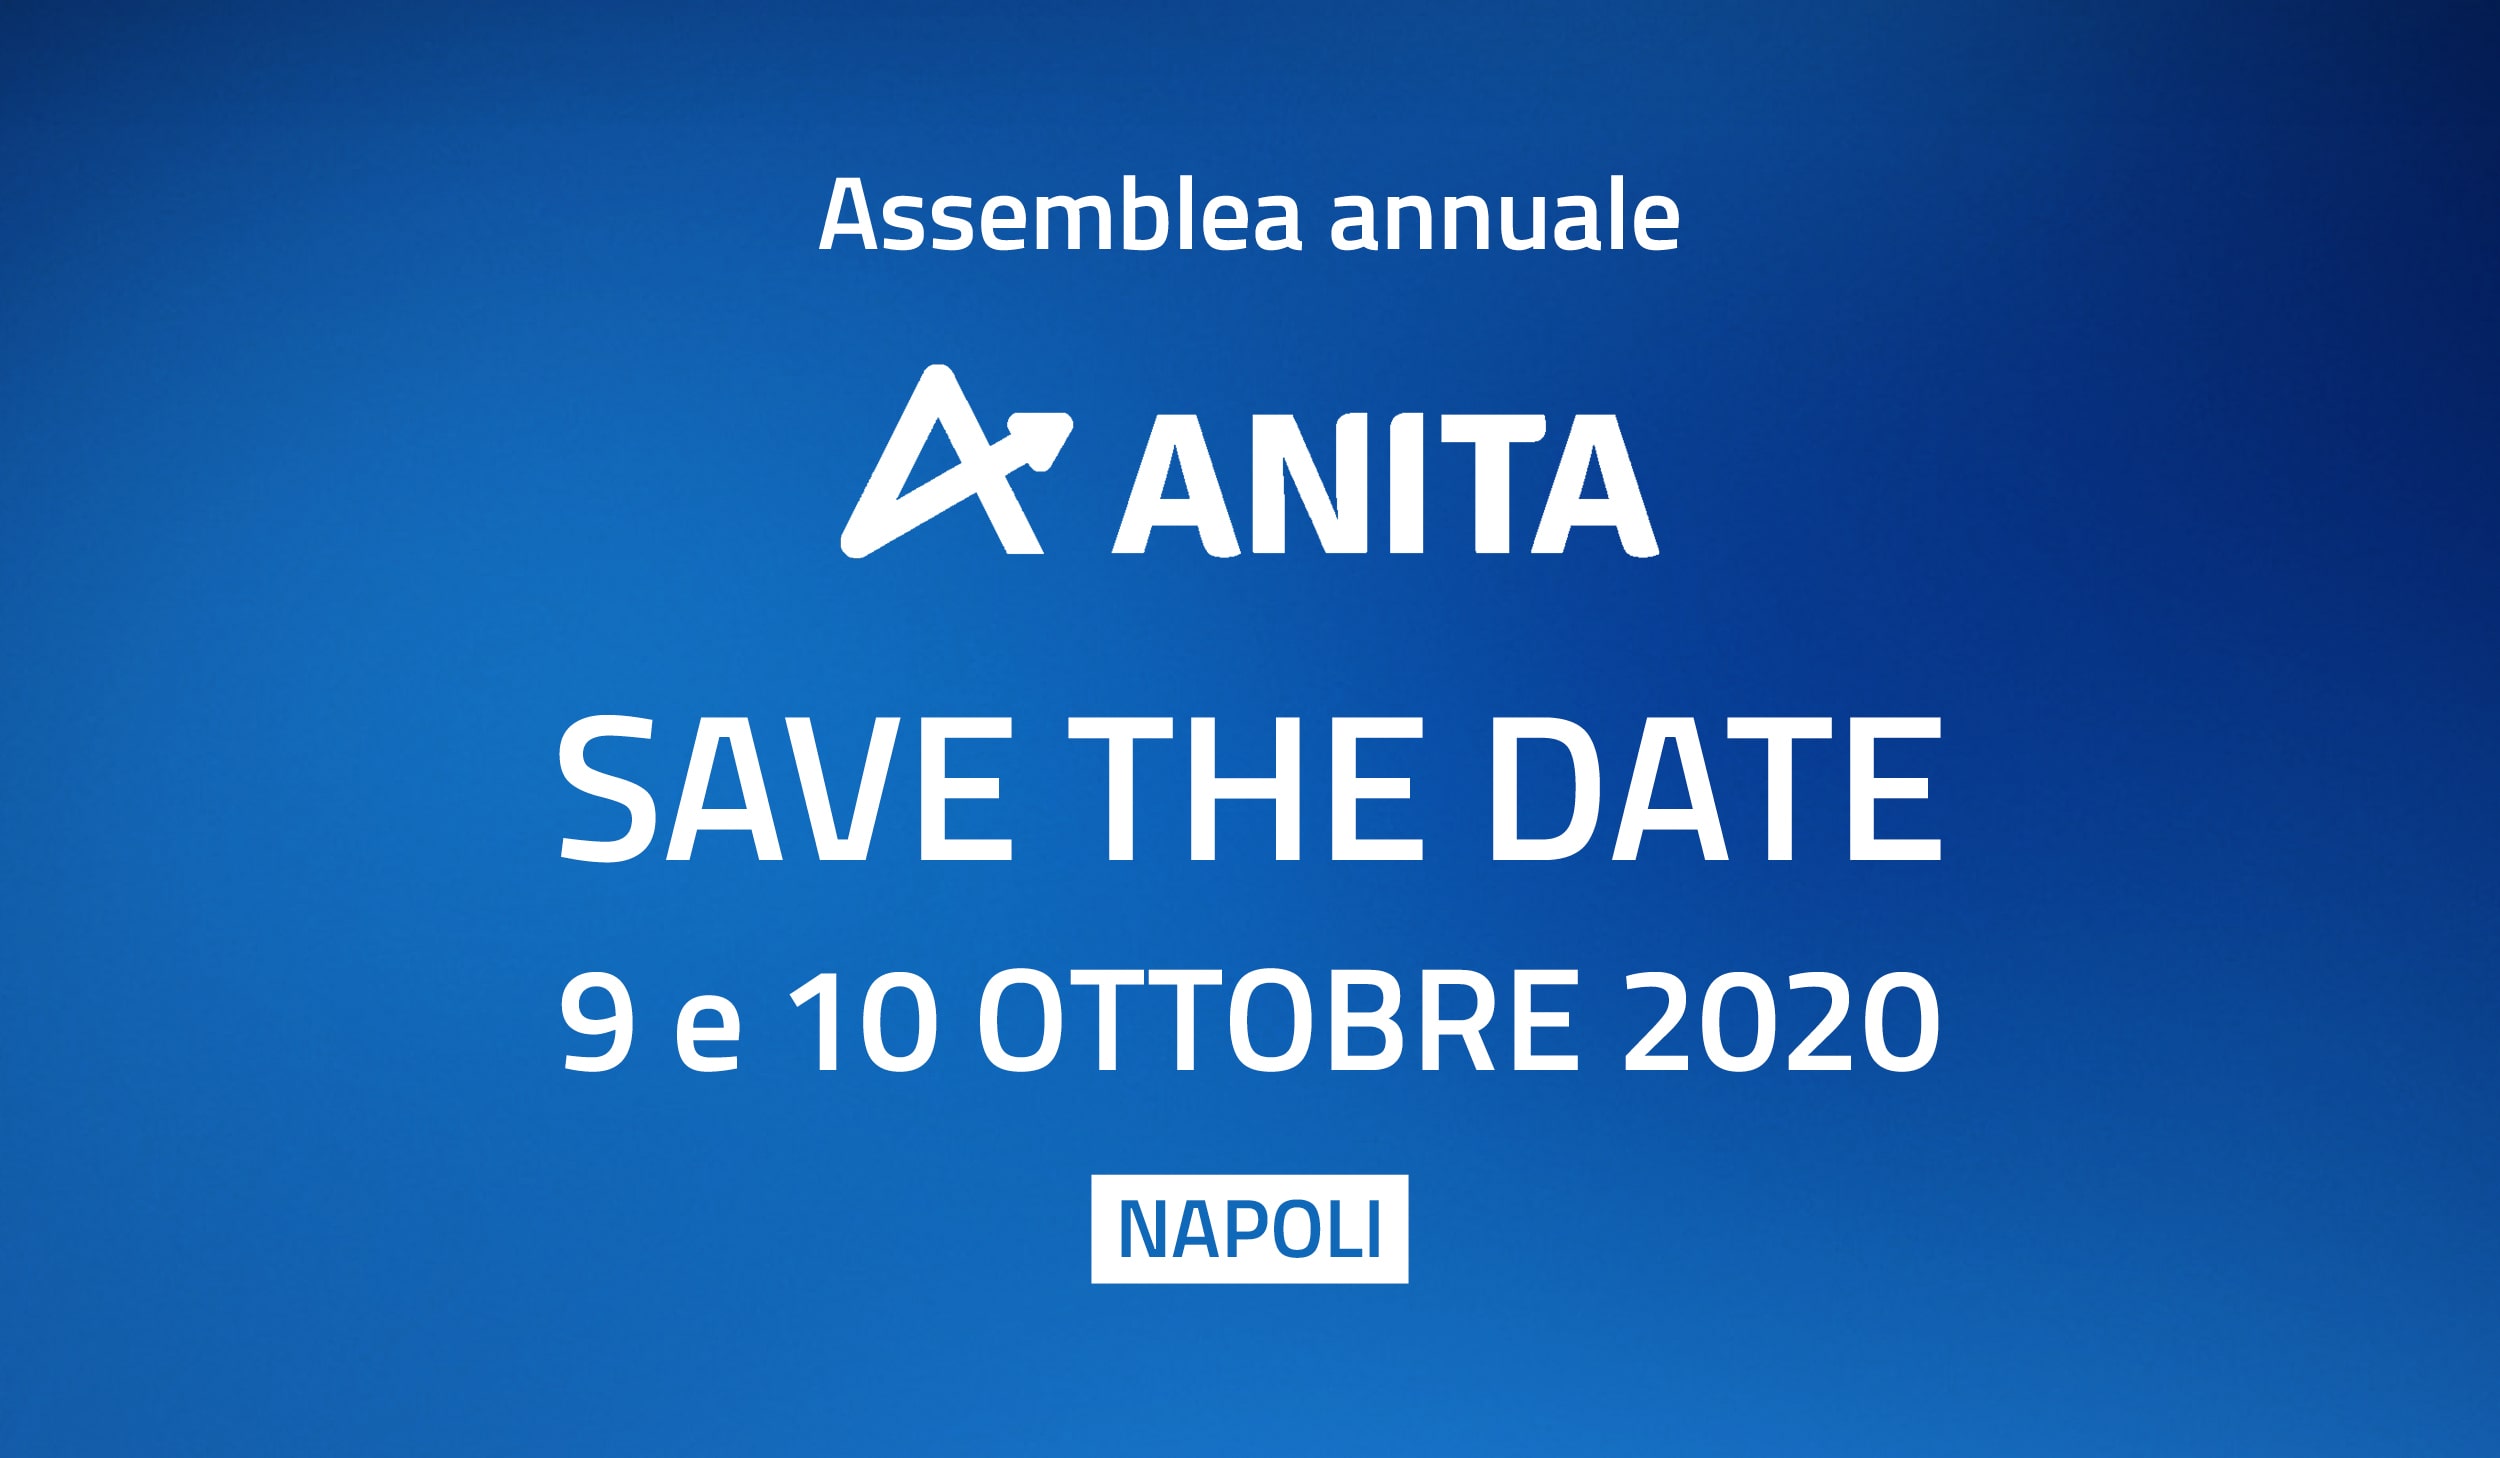 Napoli: il 9 e 10 ottobre 2020 l'Assemblea generale ANITA